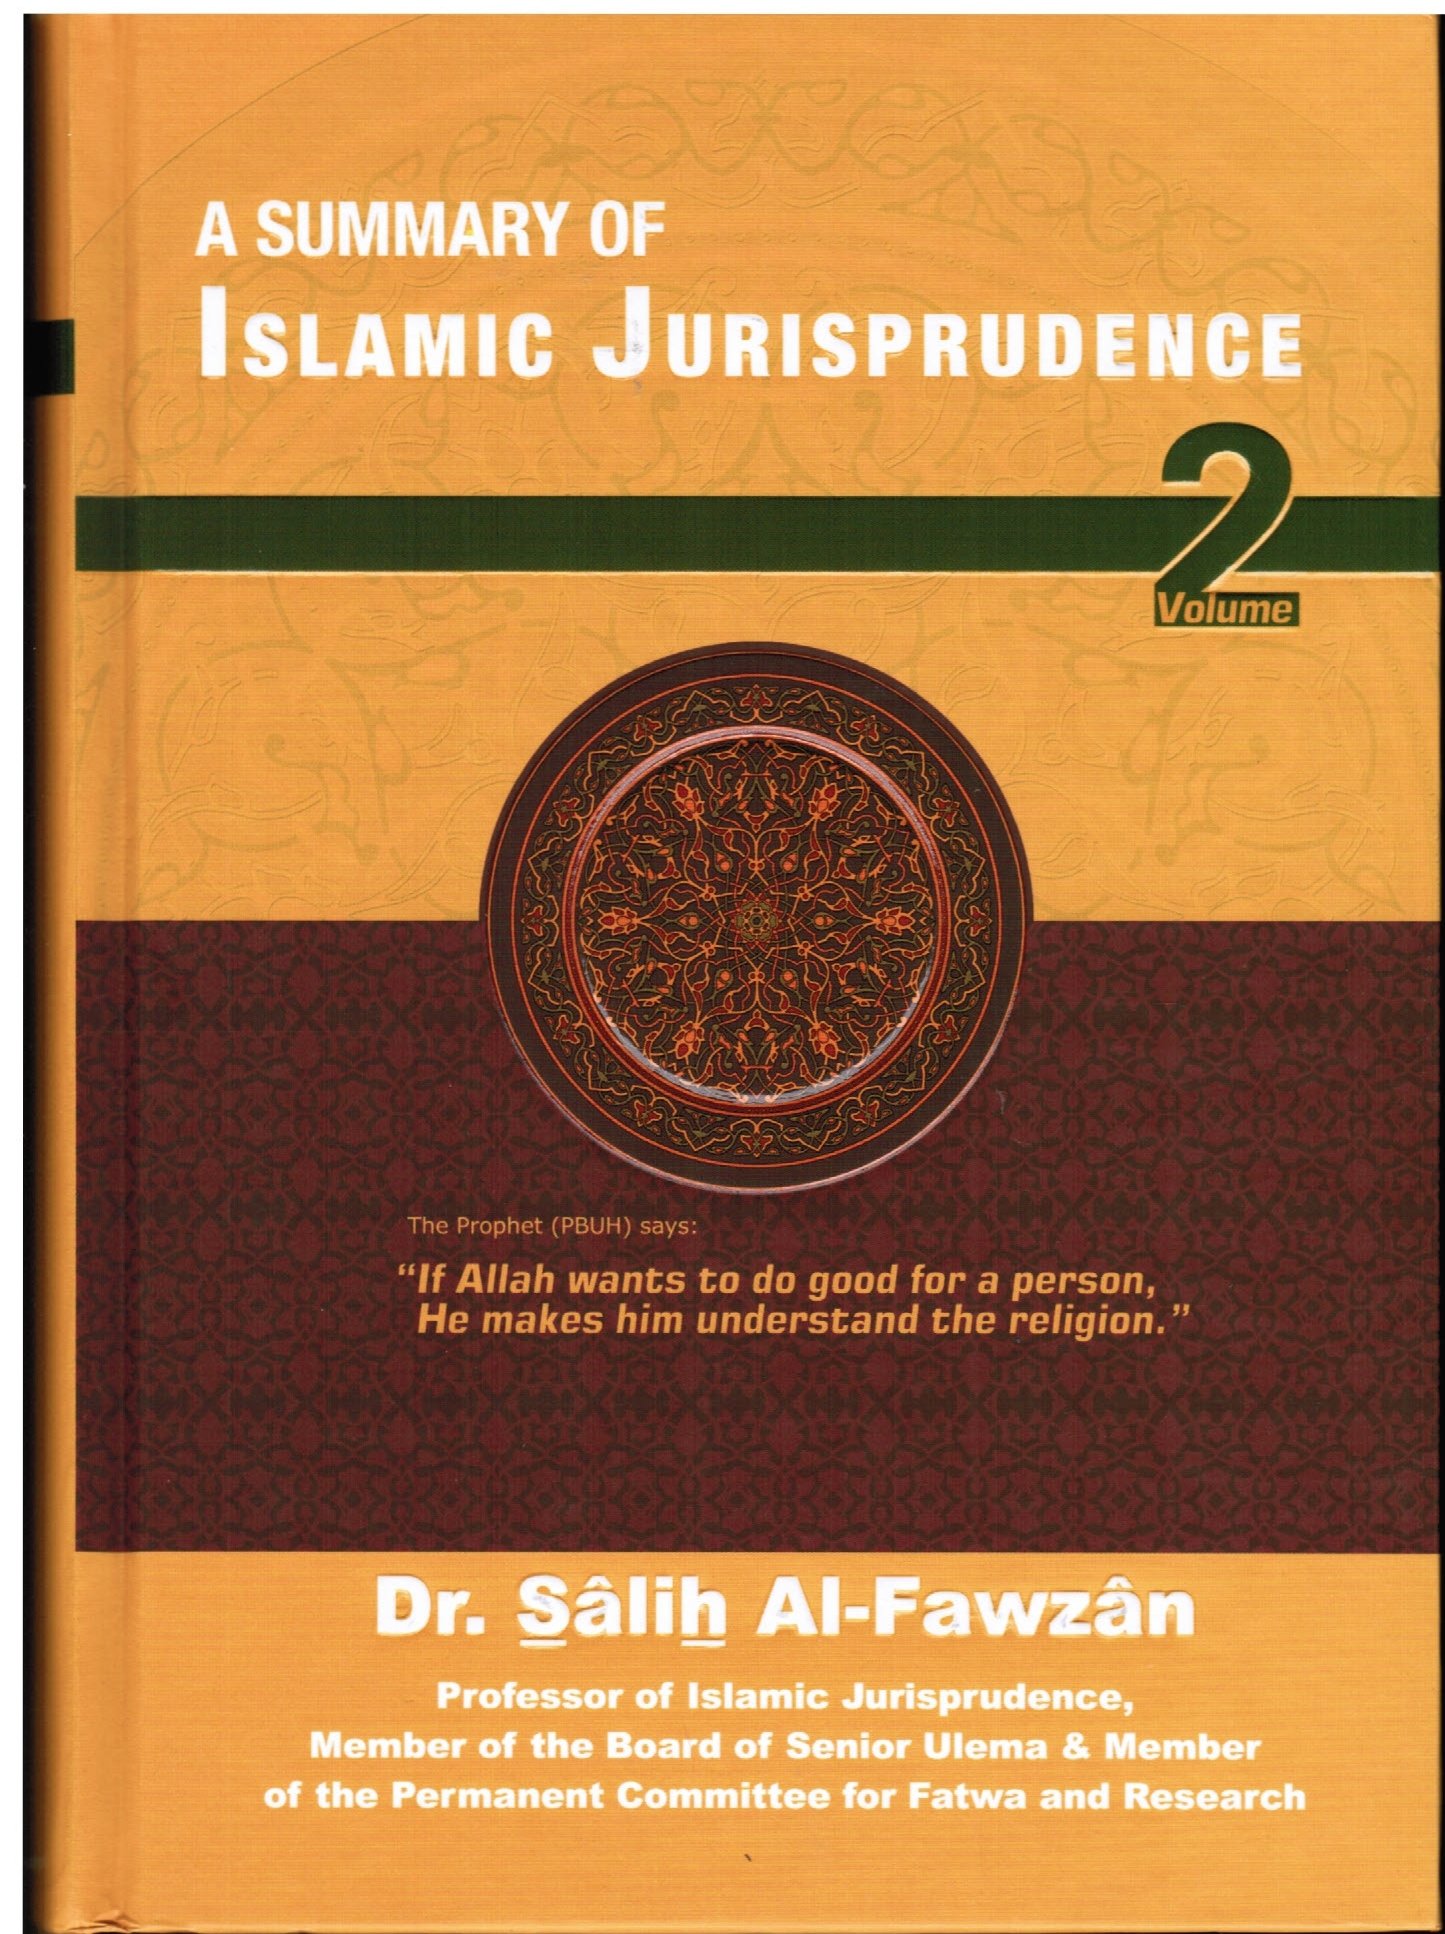 A Summary of Islamic Jurisprudence -Volume 2